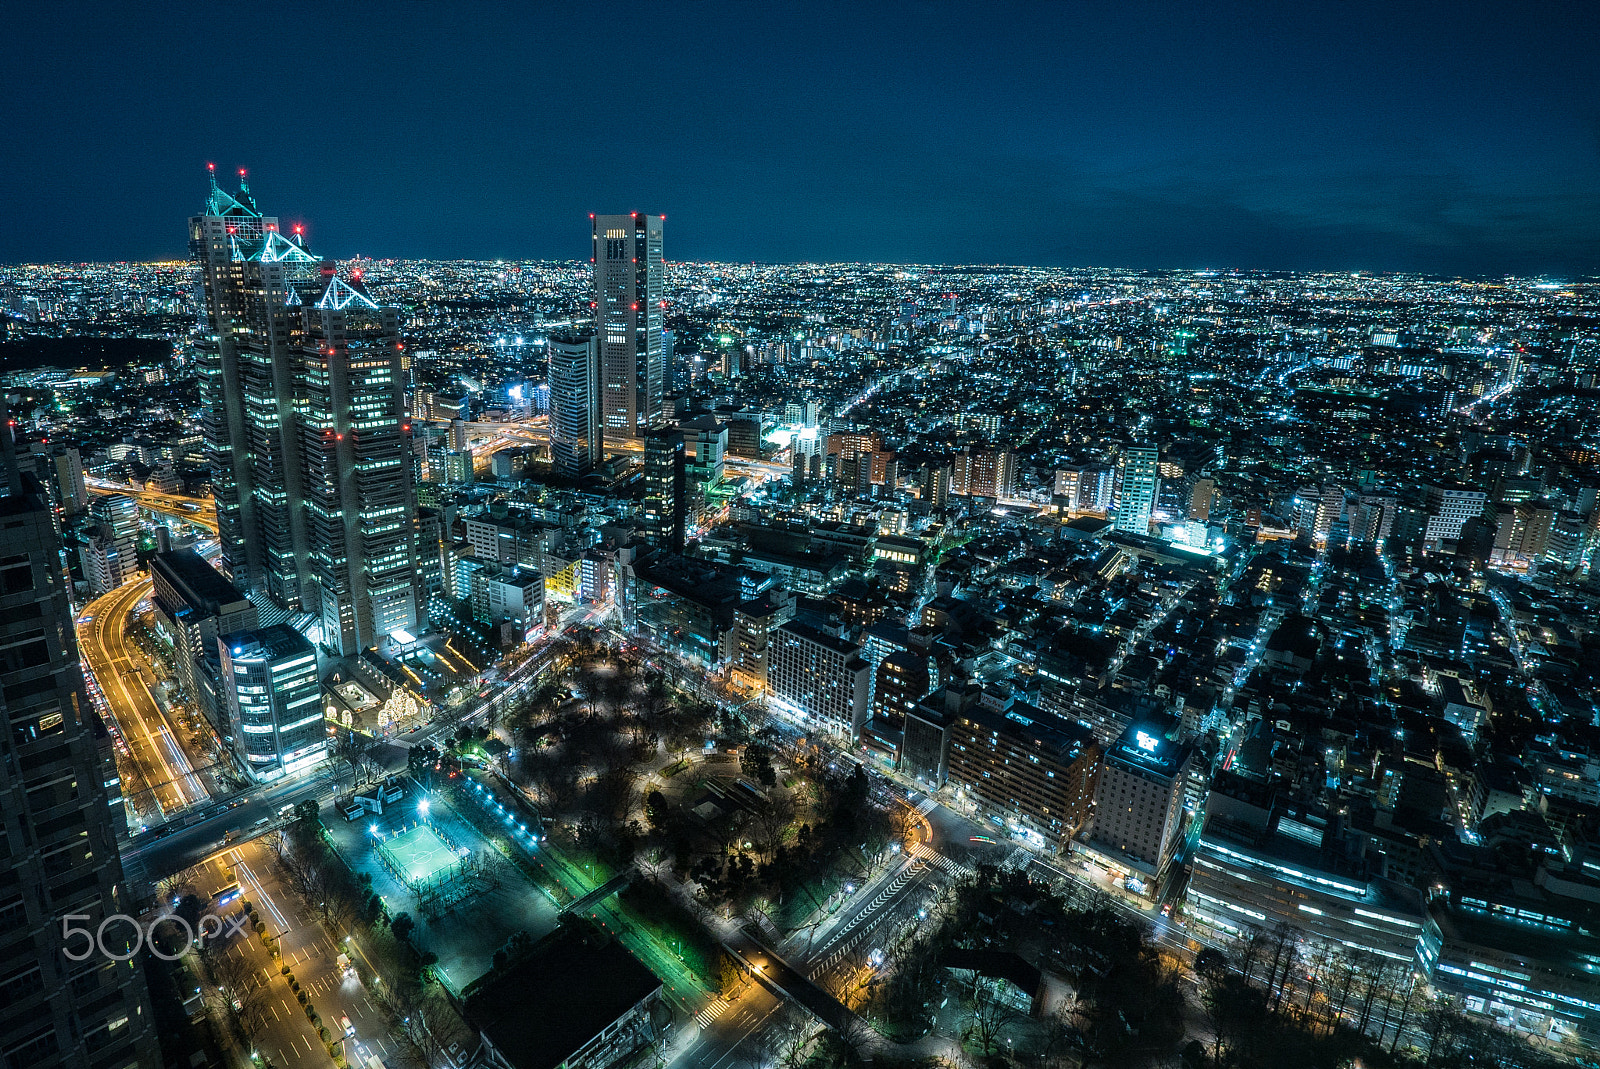 Sony a7S + Sony Vario-Tessar T* FE 16-35mm F4 ZA OSS sample photo. Shinjuku night view photography